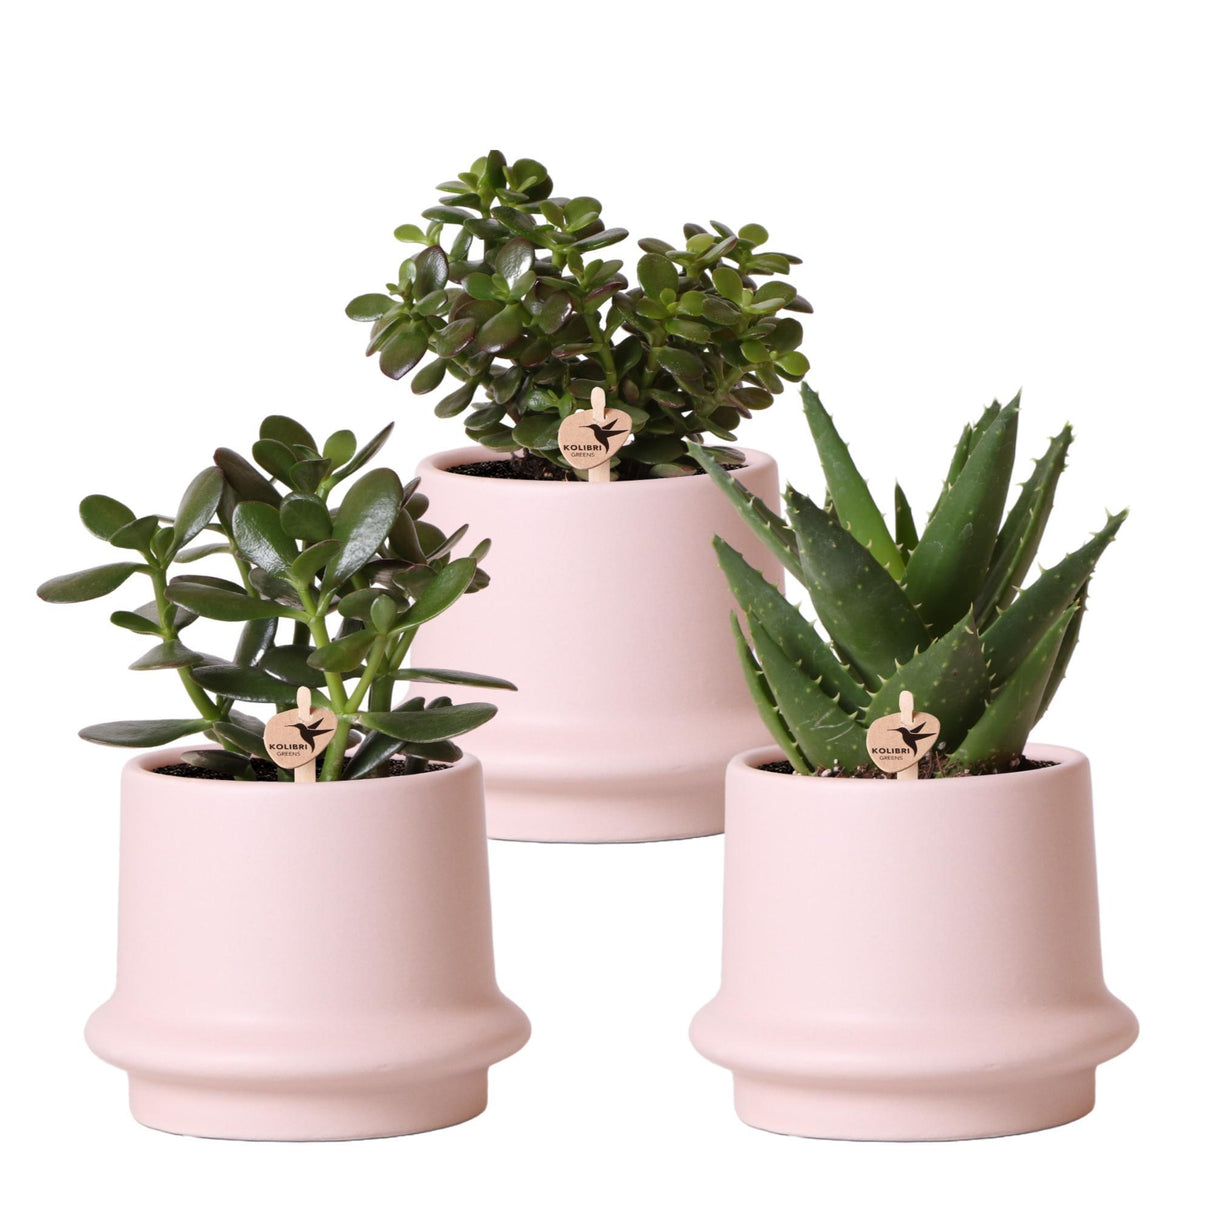 Scatola per piante grasse e fioriere in ceramica rosa - Set di 3 piante, h20 cm